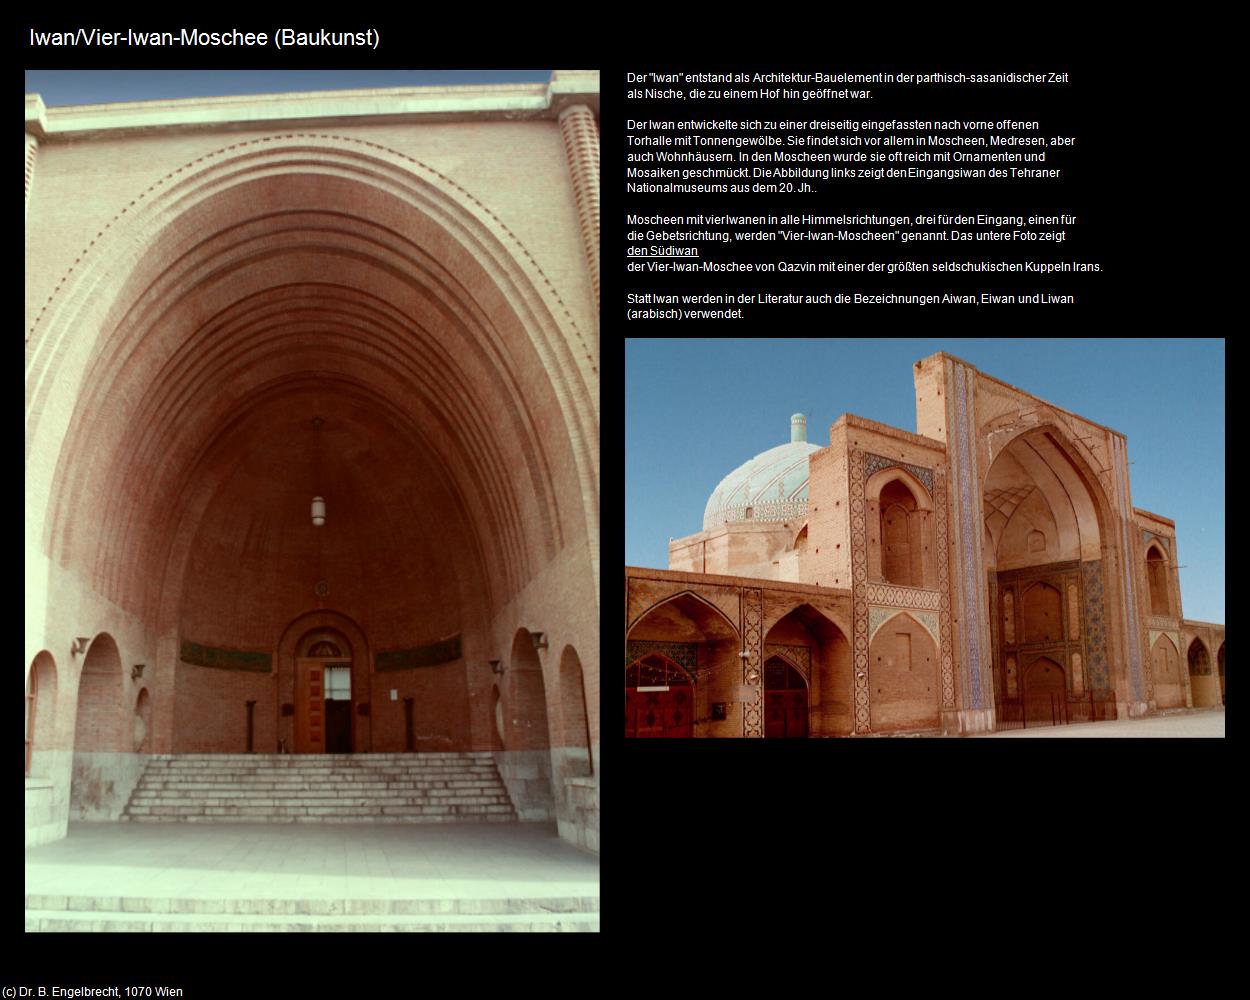 Iwan/Vier-Iwan-Moschee (IRAN-Baukunst) in Iran(c)B.Engelbrecht